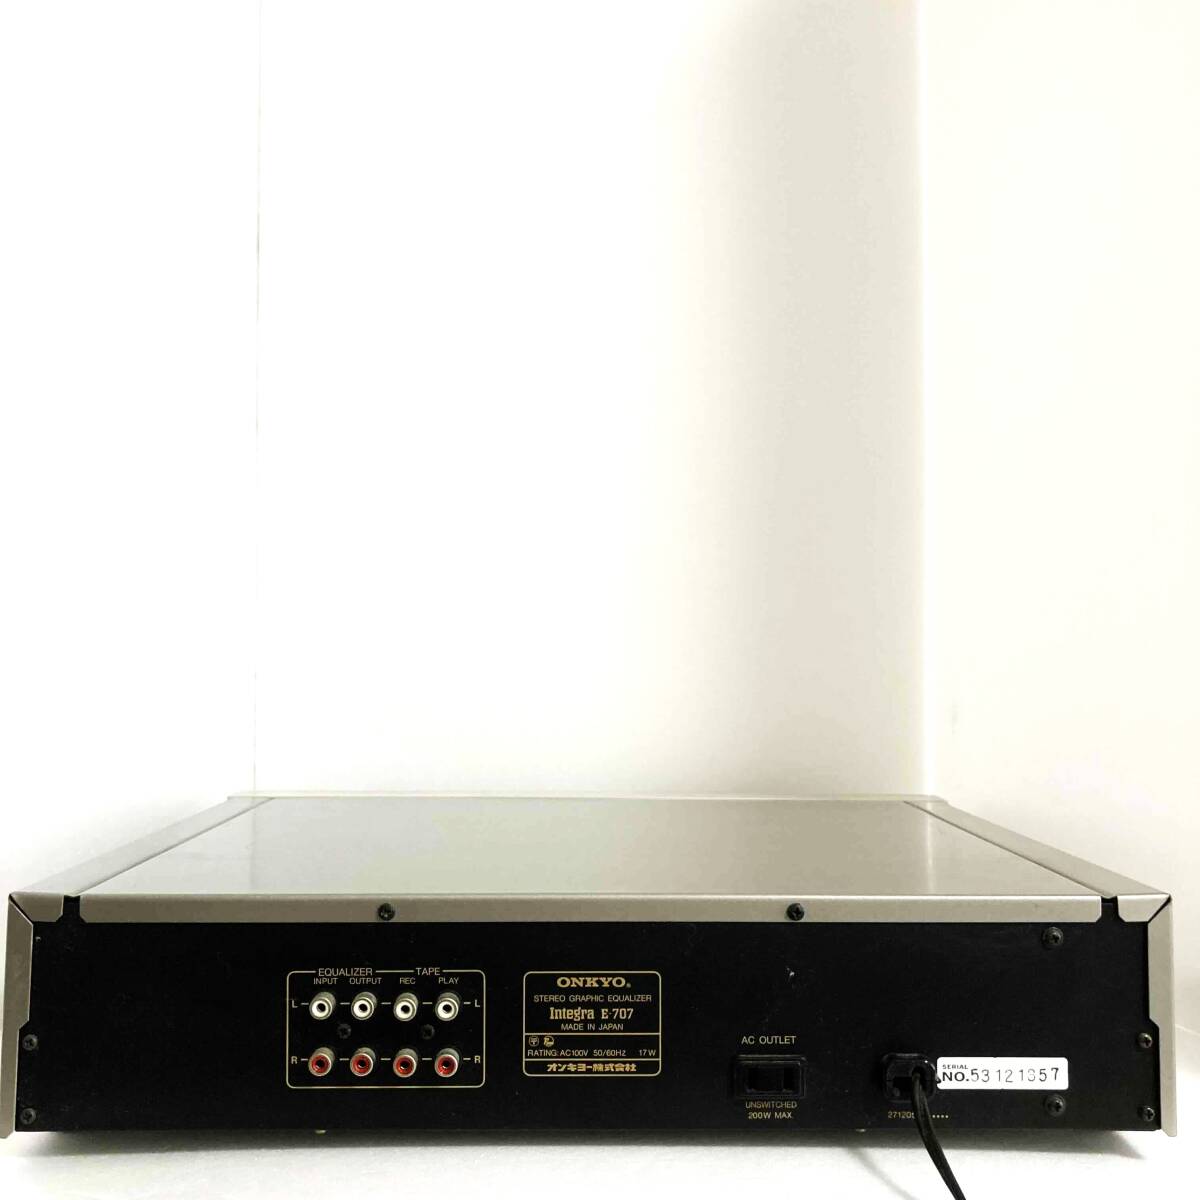 ONKYO Integra E-707 Onkyo stereo graphic equalizer equalizer sound equipment audio equipment 